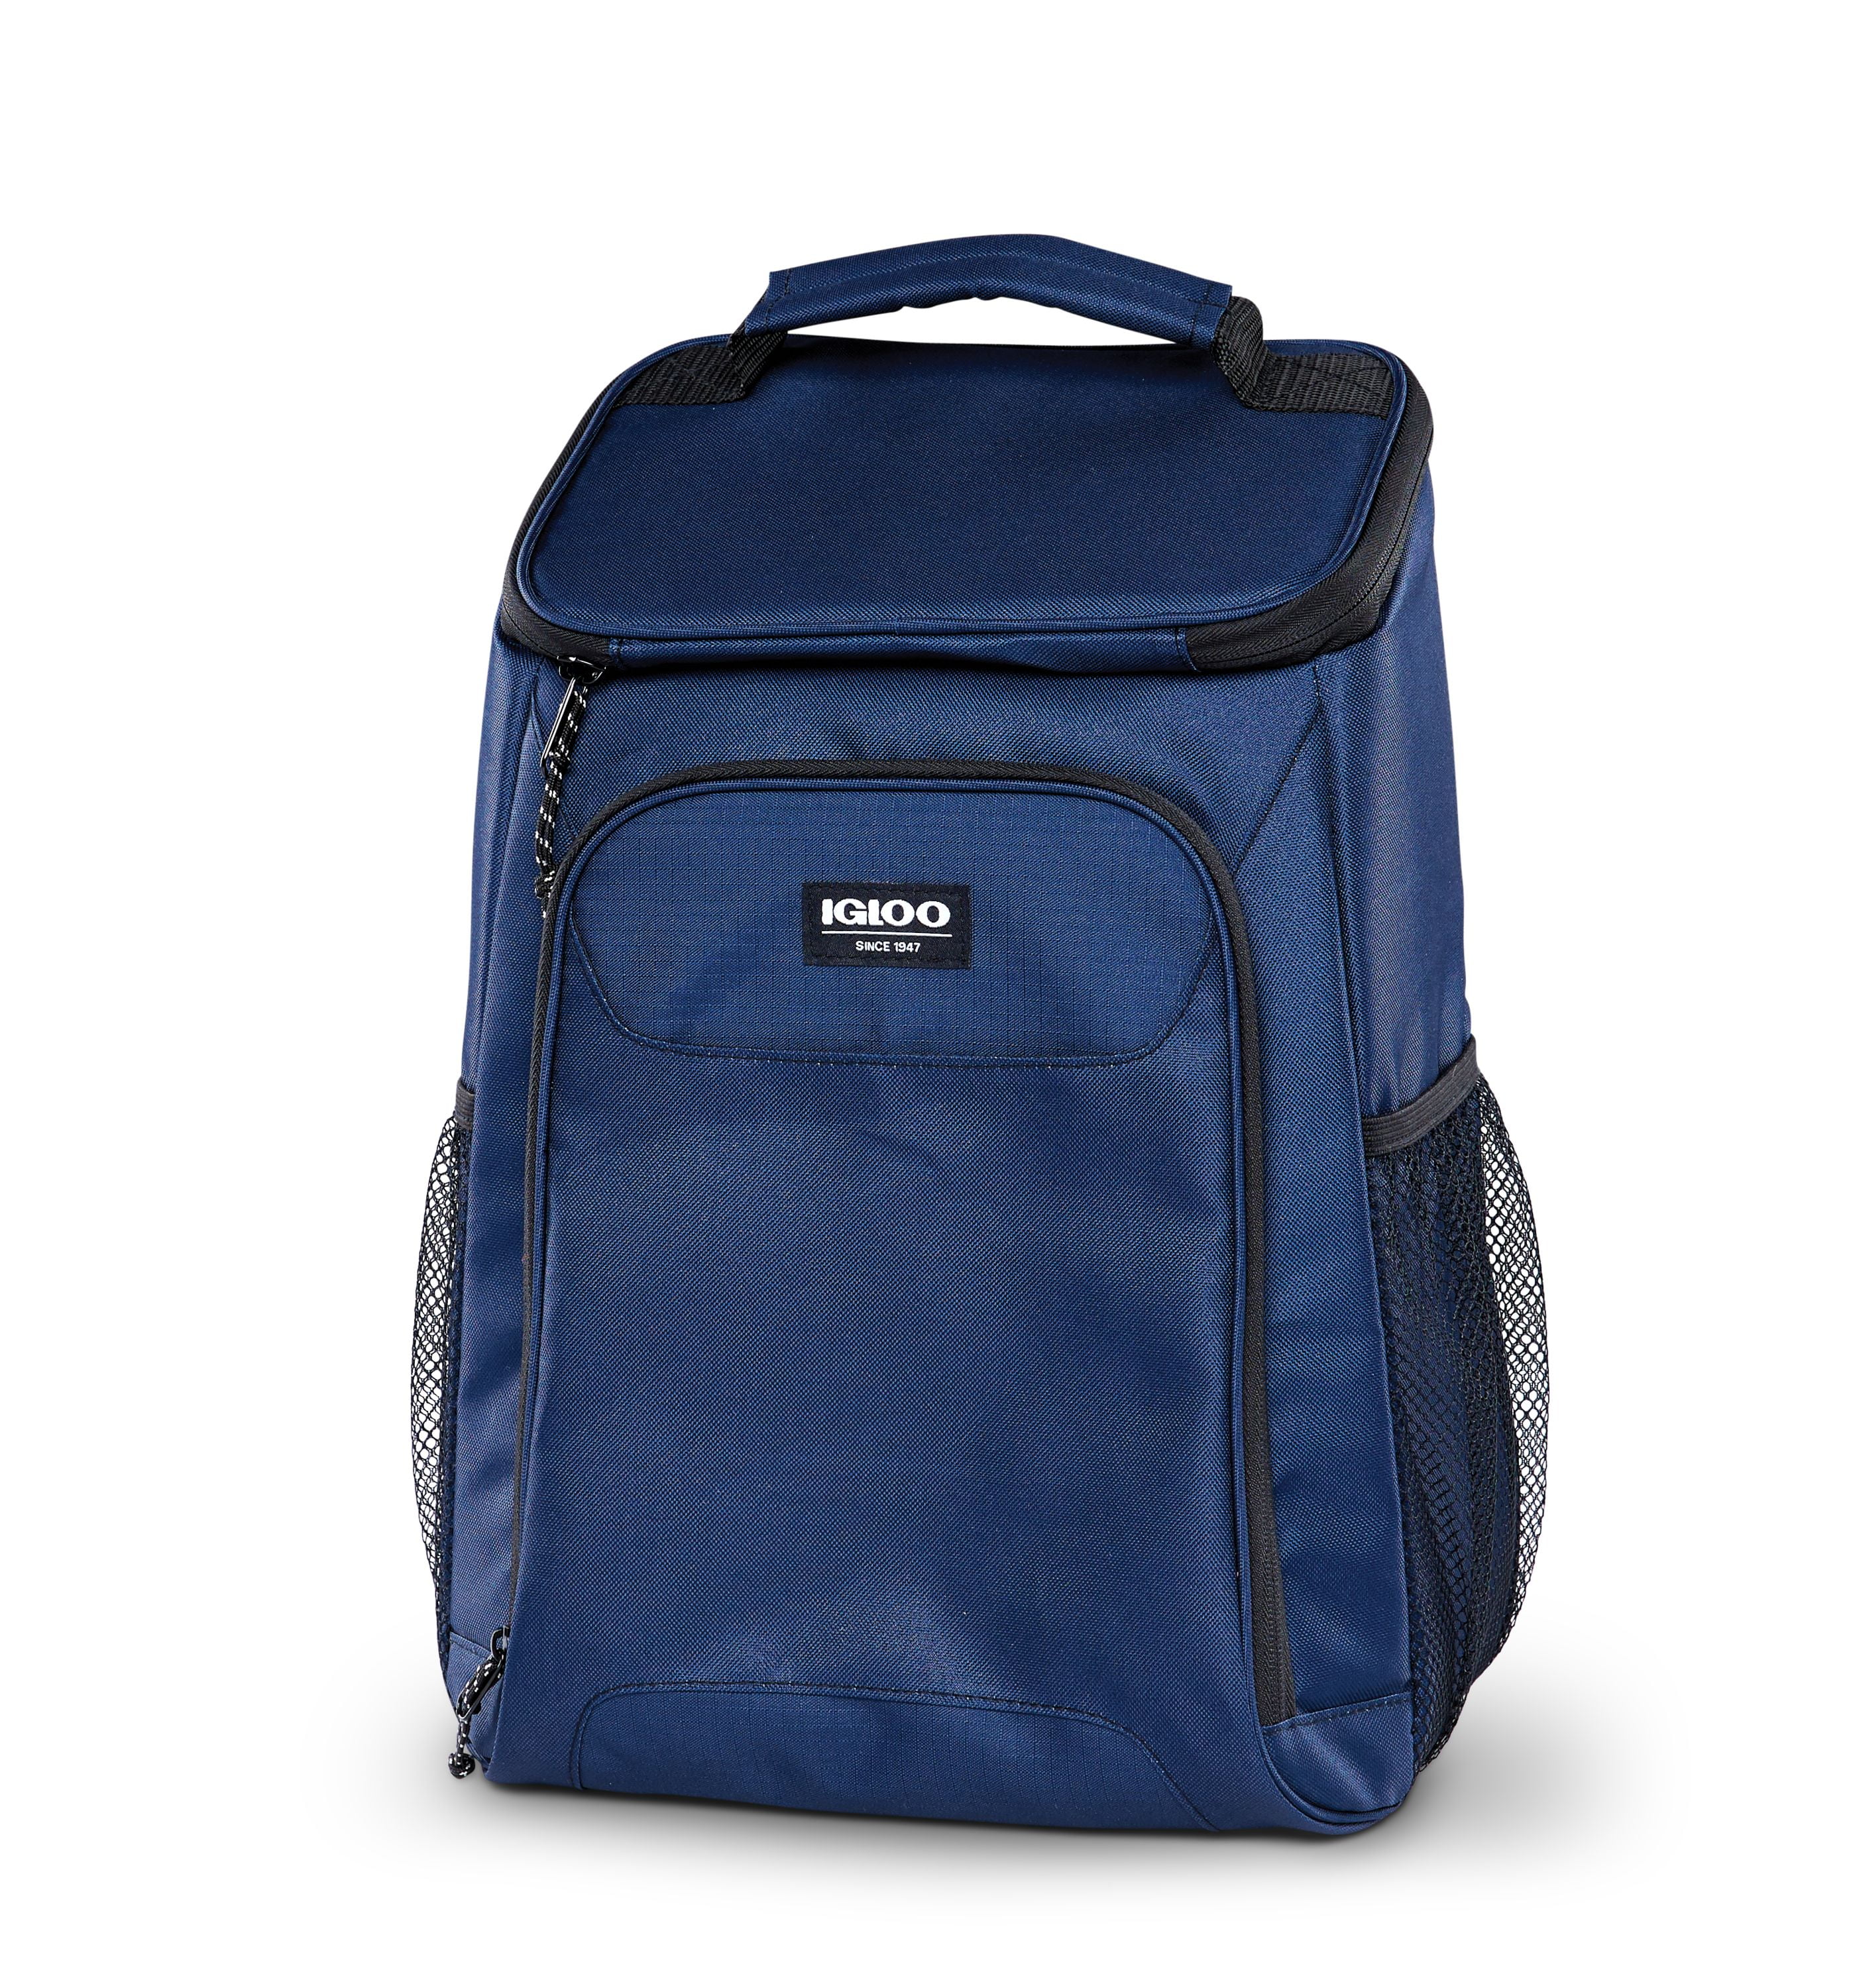 igloo backpack cooler